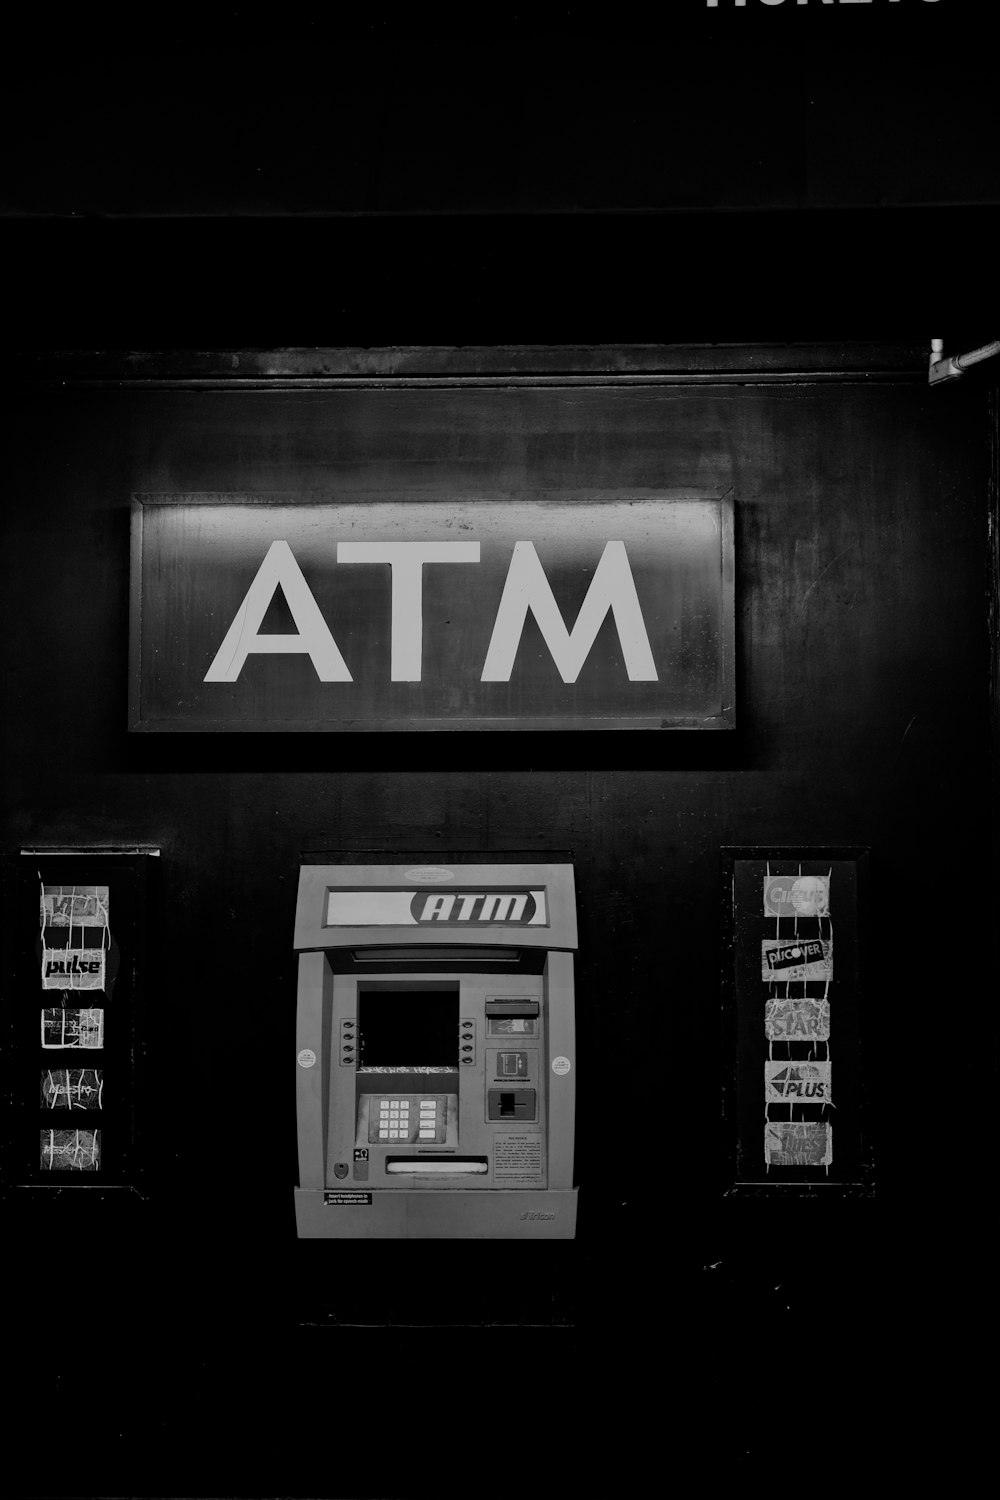 ATM 기계의 회색조 사진